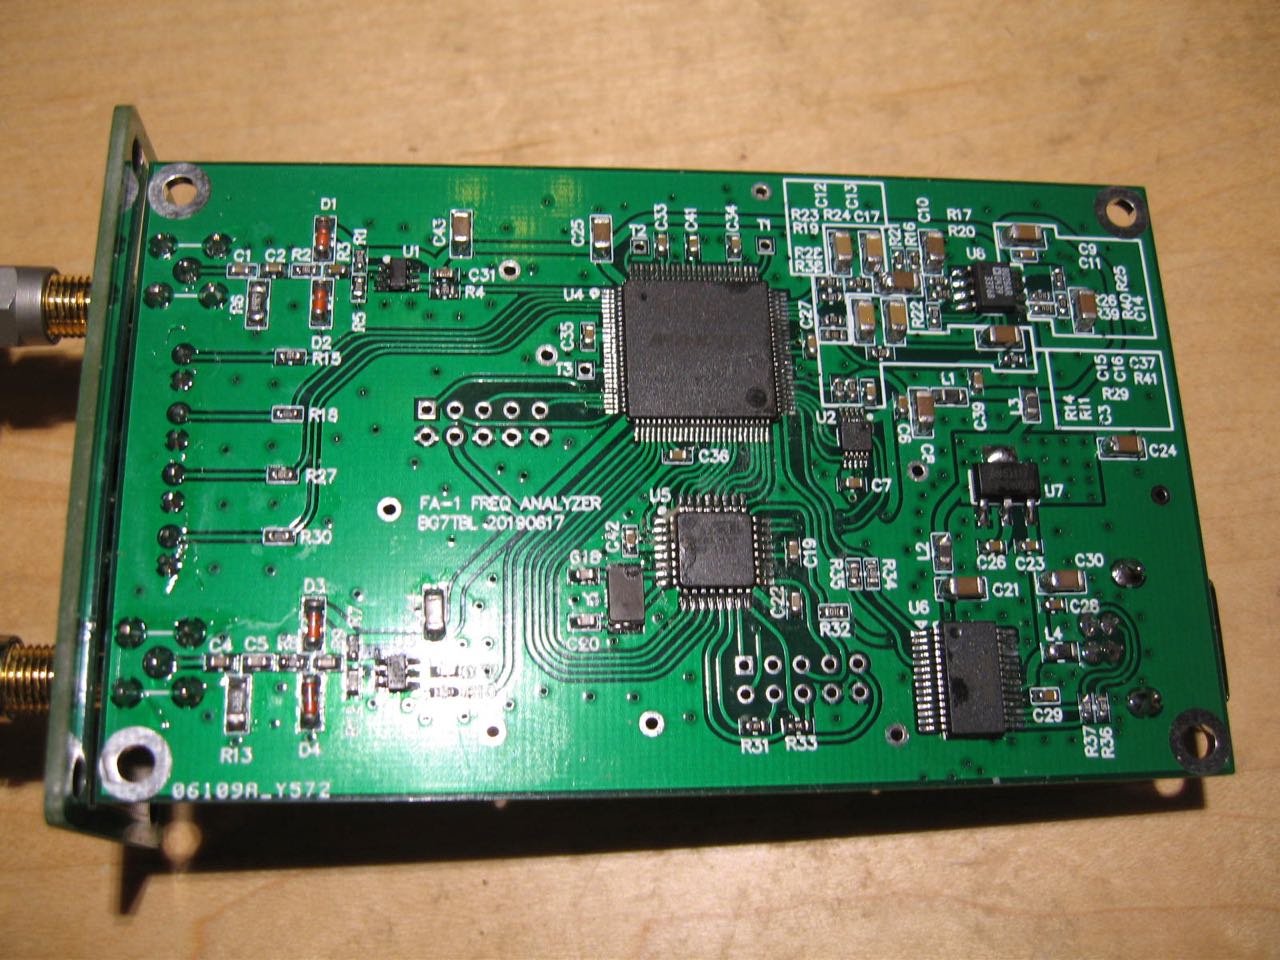 Fréquence FA1-USB Analyseur Compteur de Fréquence avec interface USB BG7TBL 20190327 SJR 